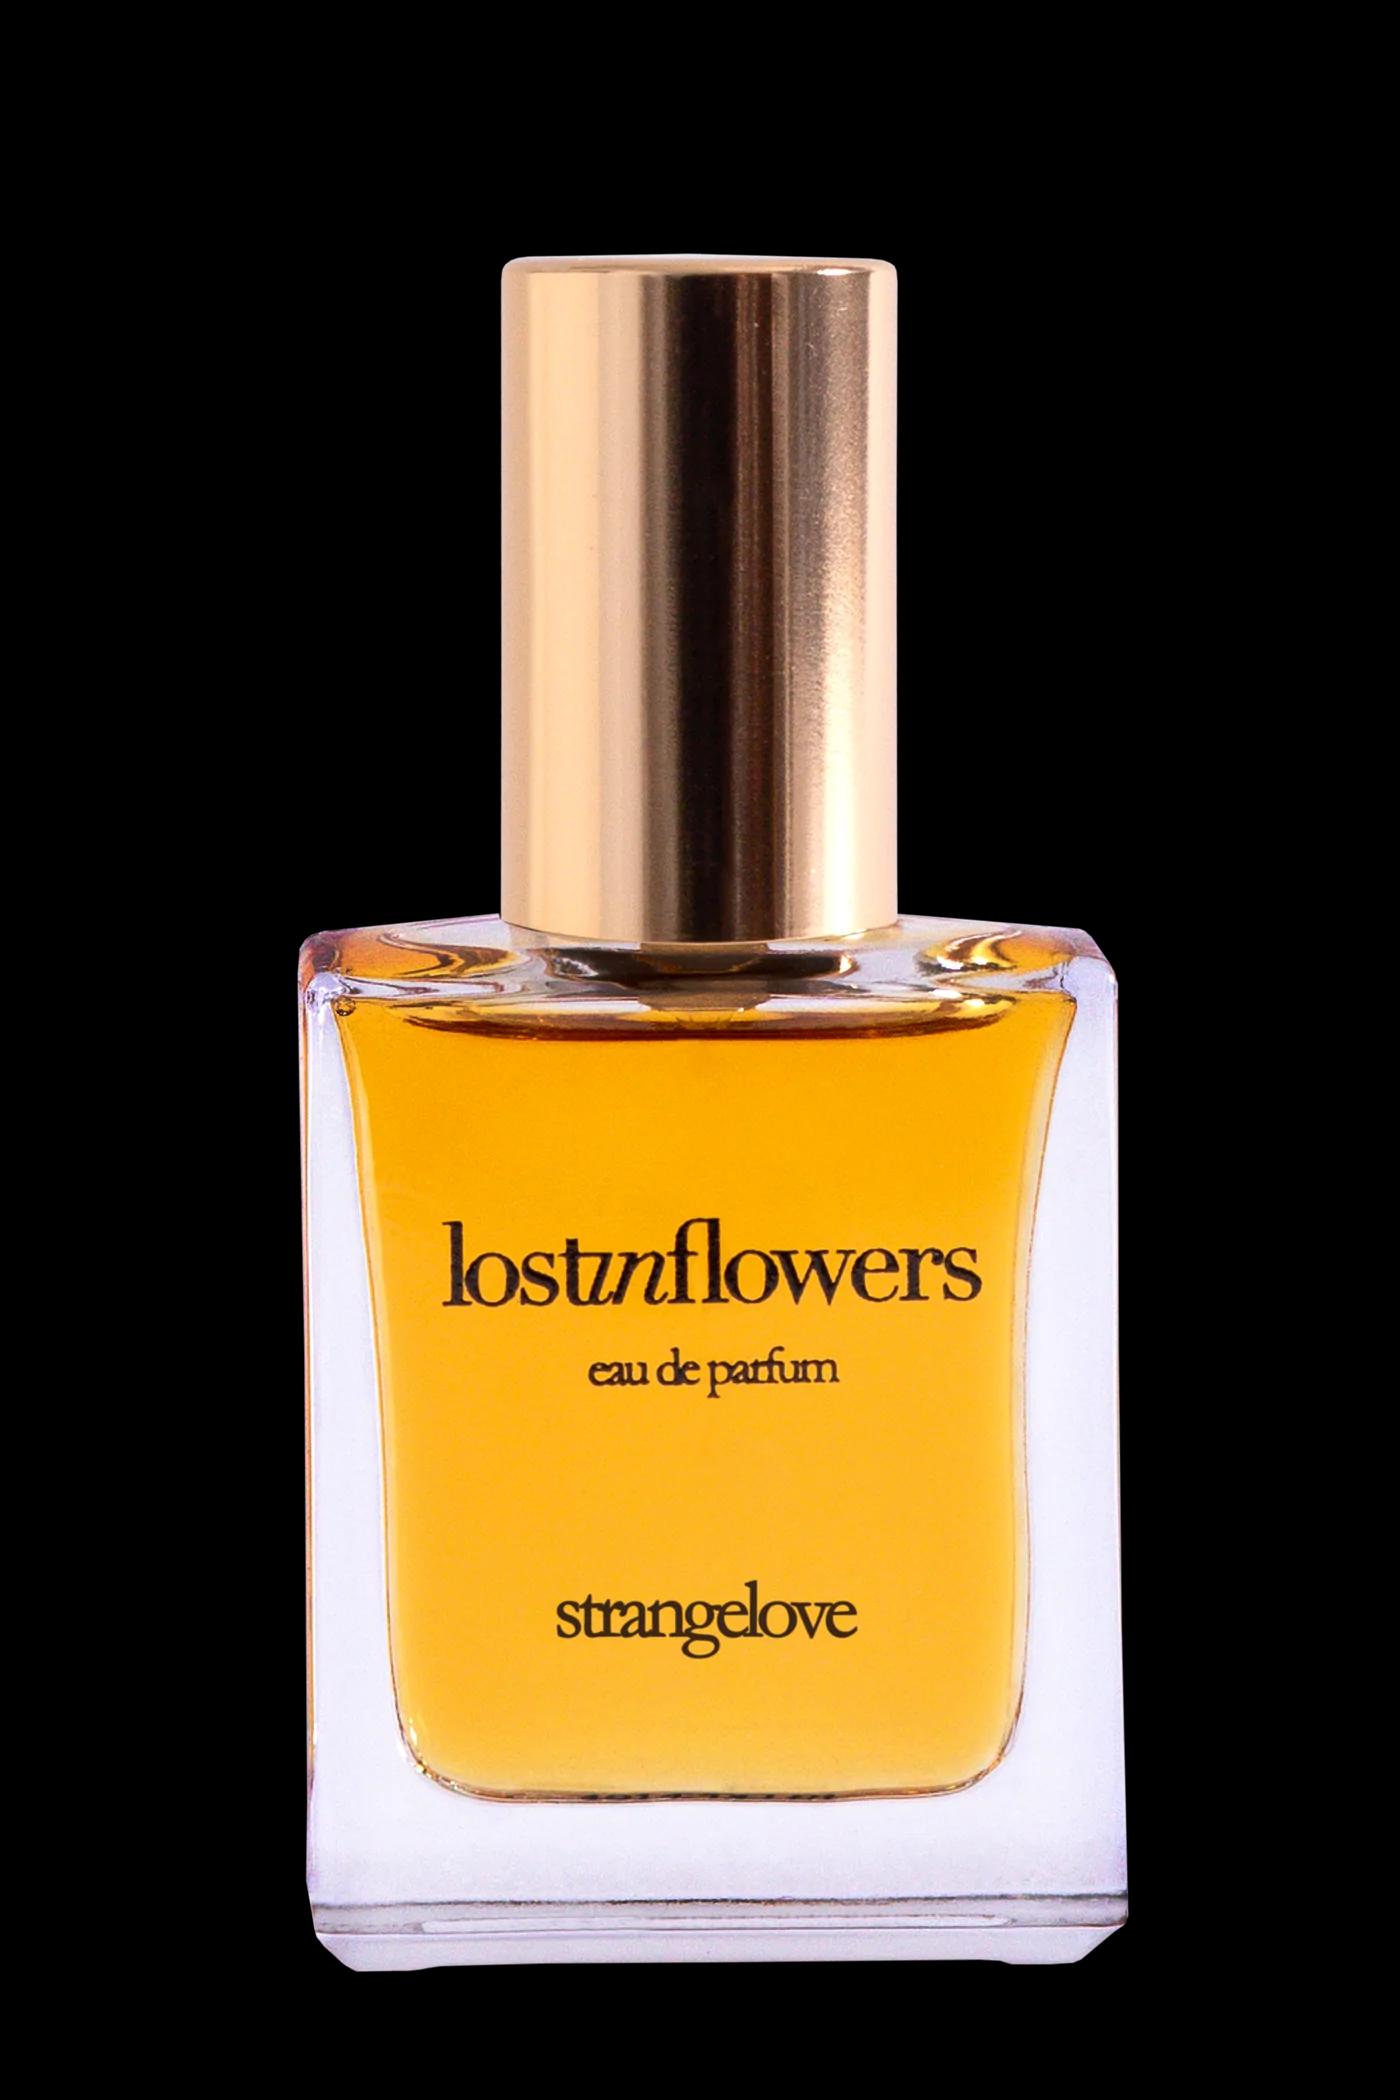 strangelove - lostinflowers 15 ml | Perfume Lounge